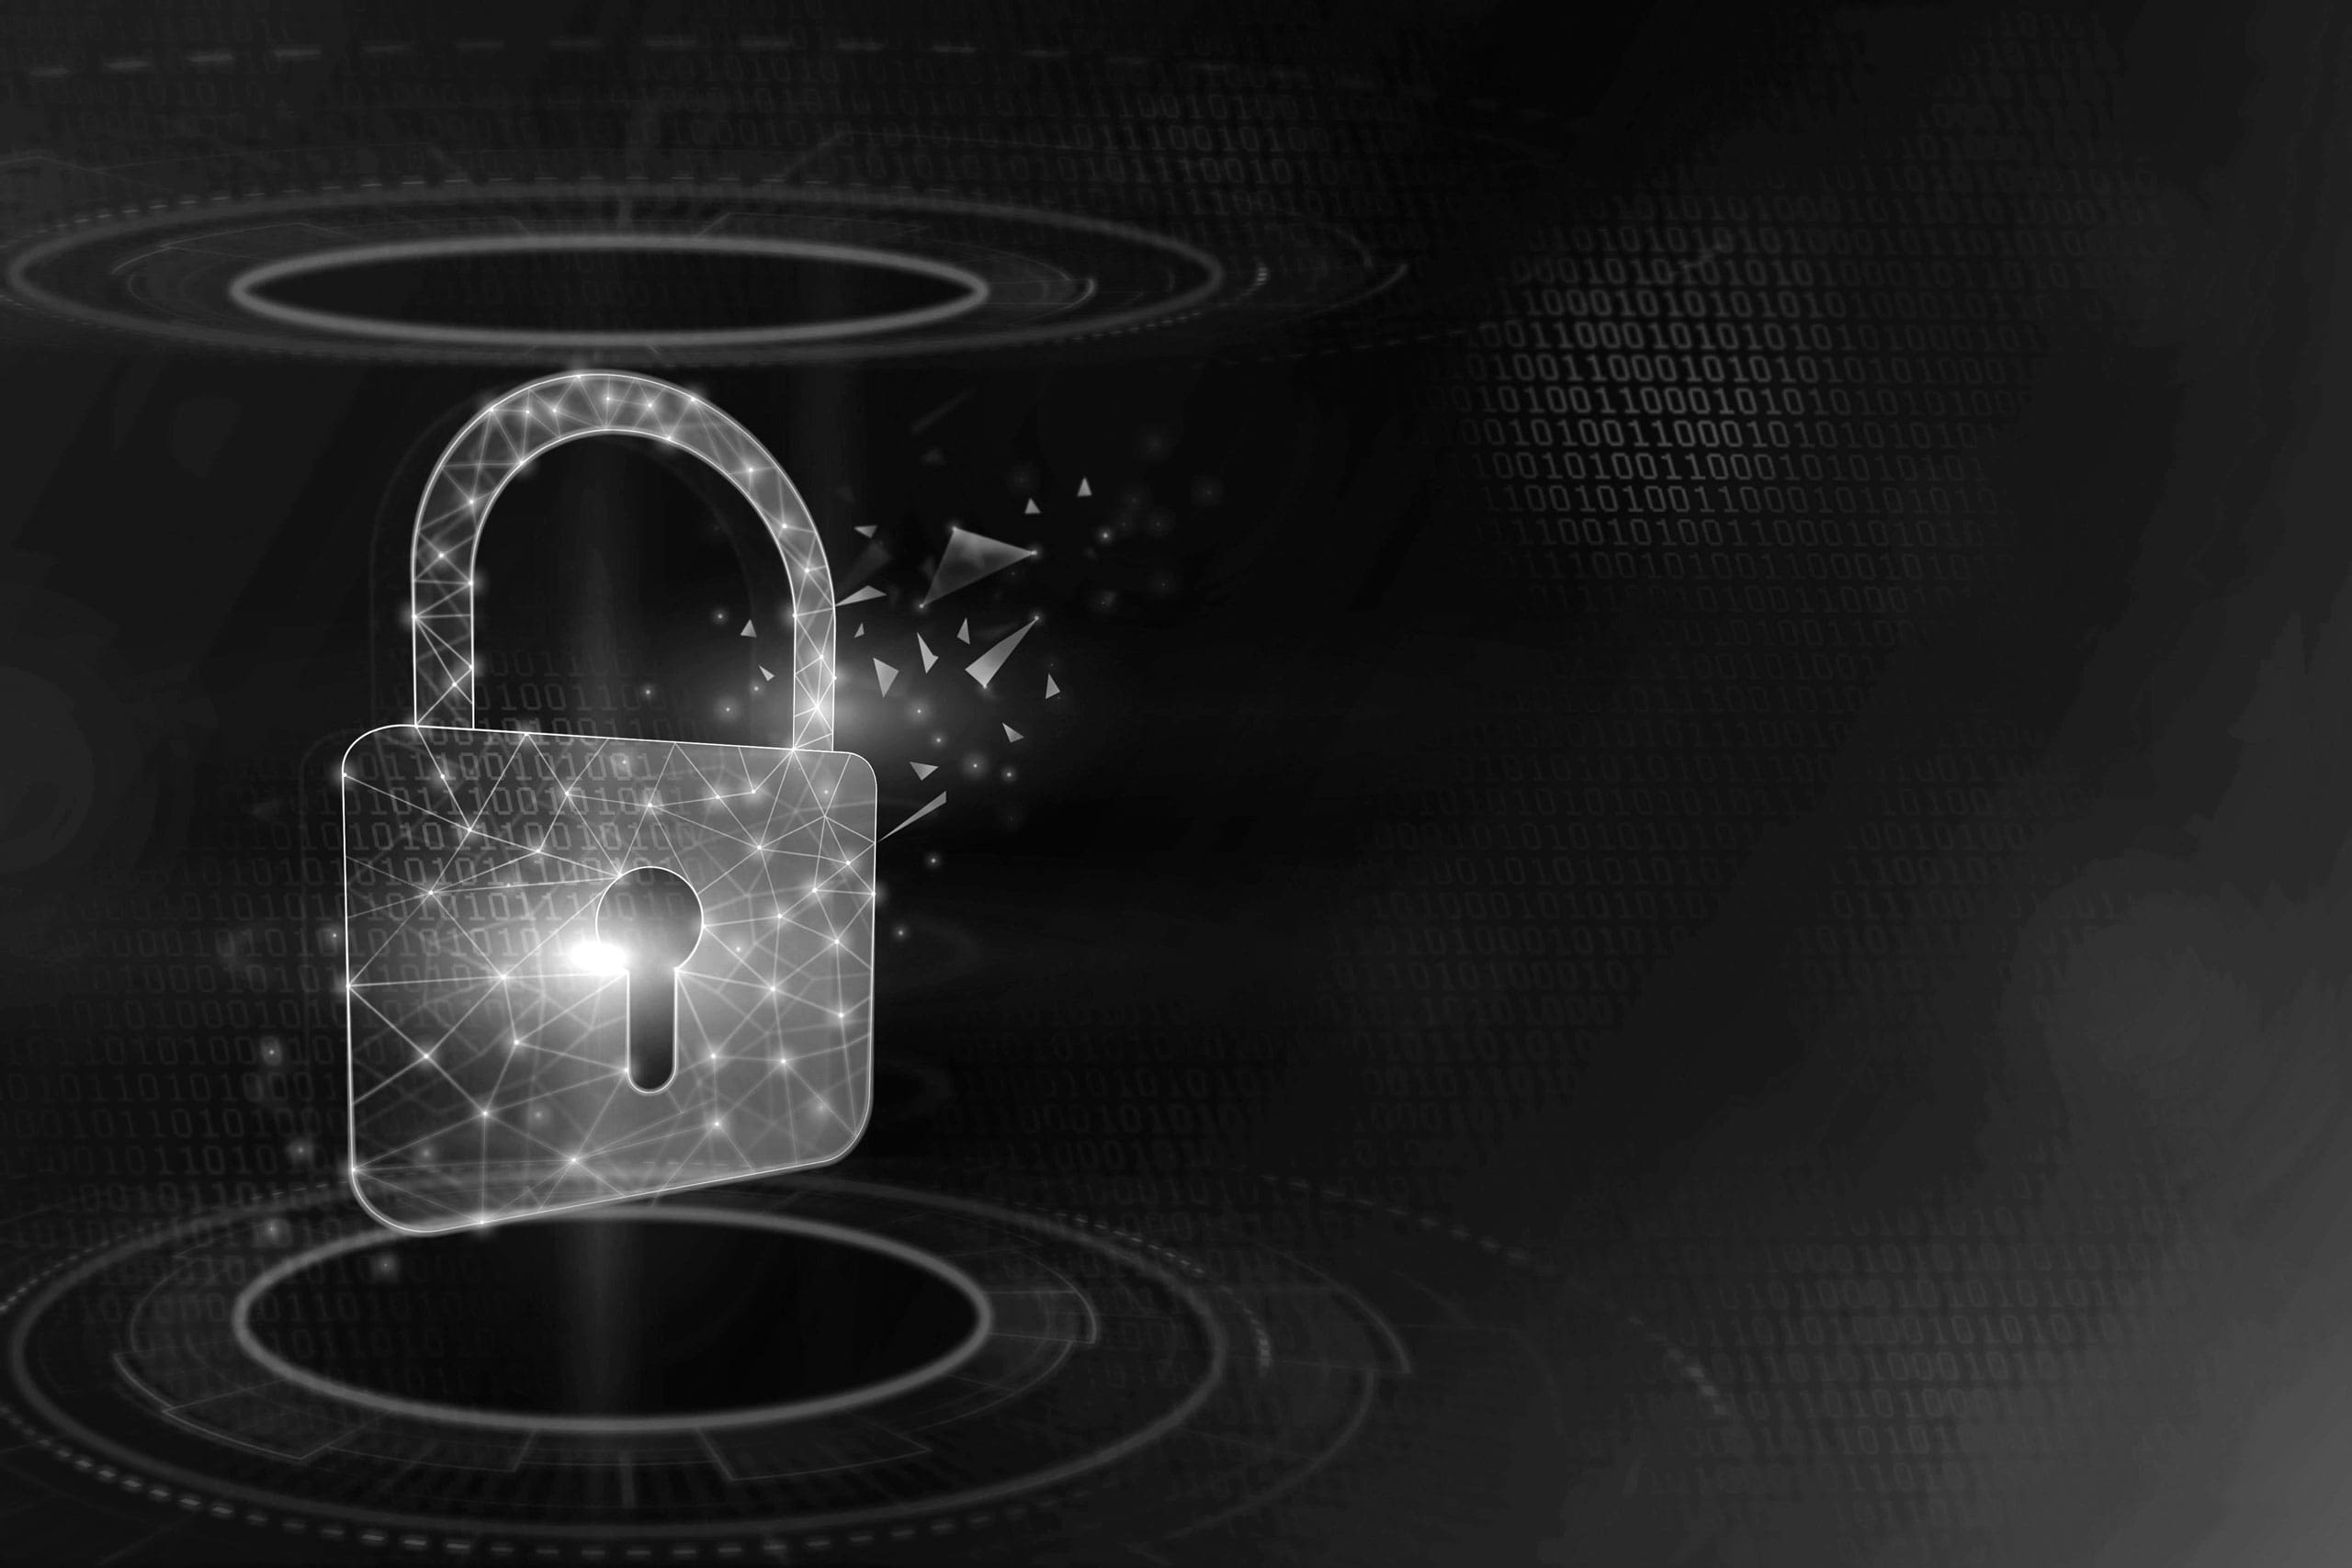 Das audako Sicherheitskonzept gegen Cyberkriminalität: IT-Sicherheit auf höchstem Niveau aus Expertensicht